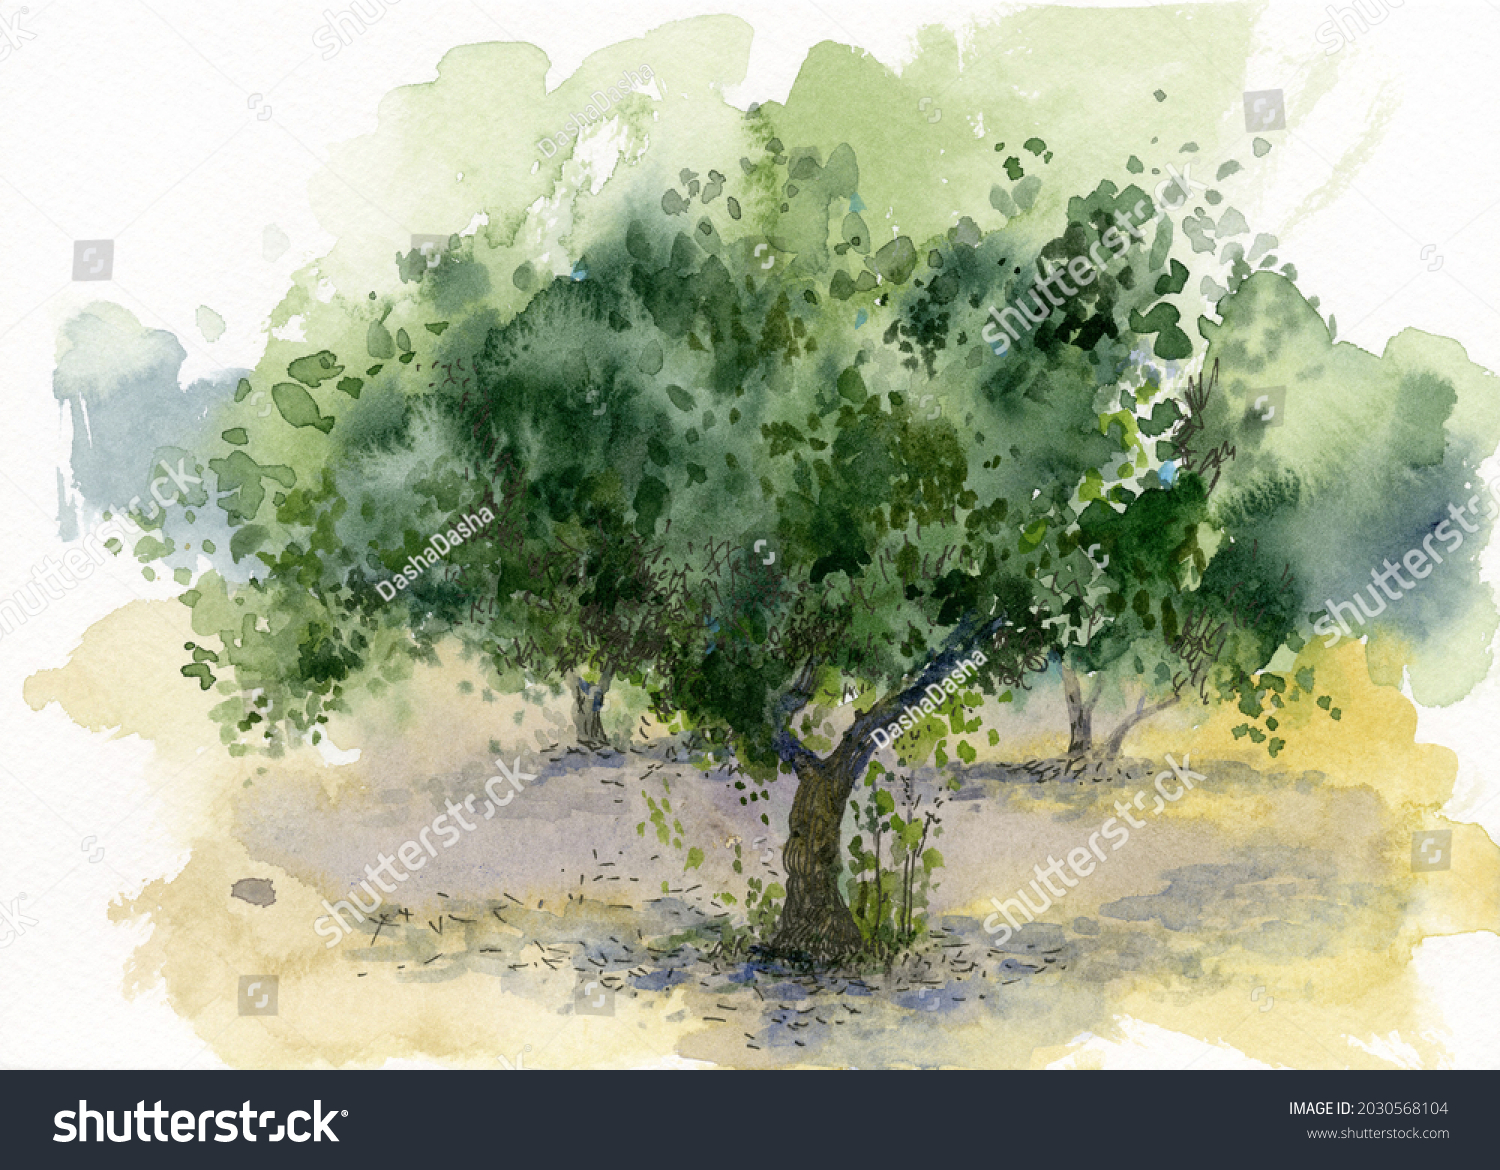 imágenes de Painting olive tree Imágenes fotos y vectores de stock Shutterstock